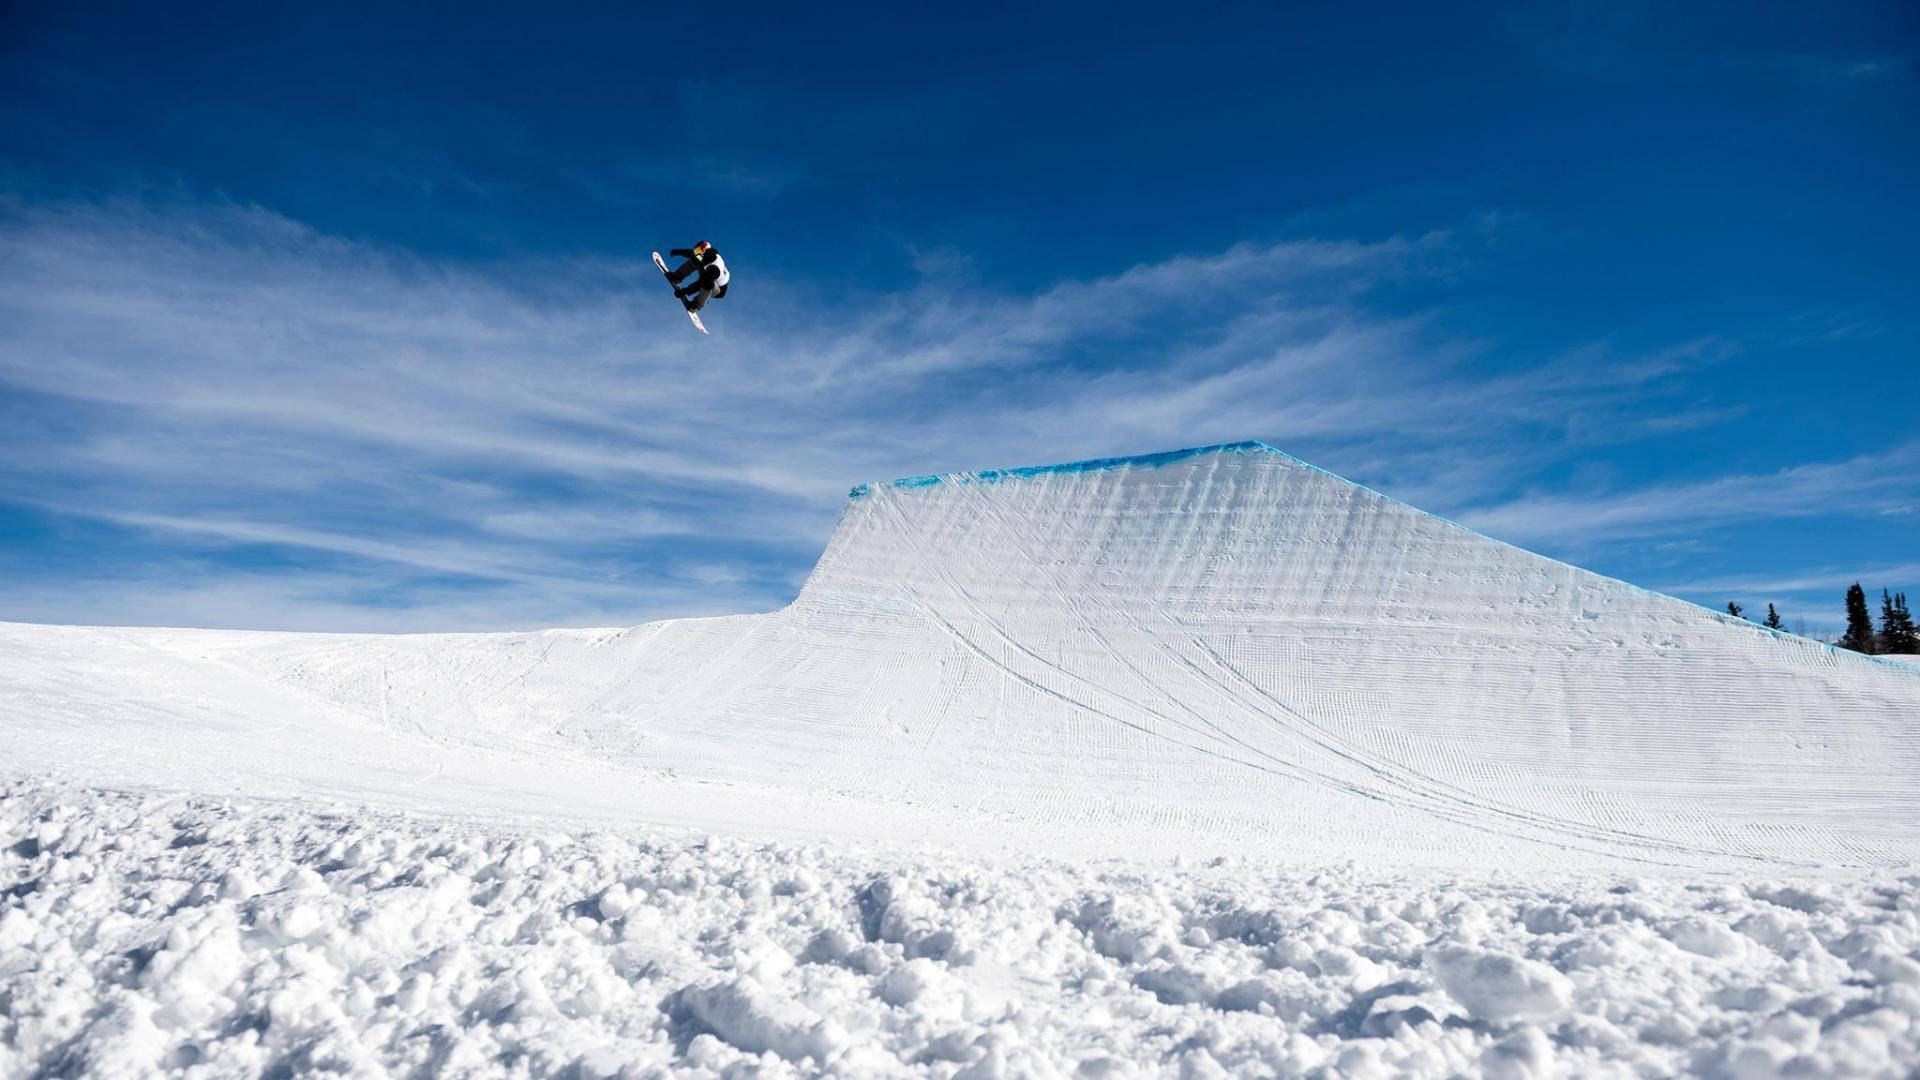 X Games Snowboarder Aerial Stunt Background